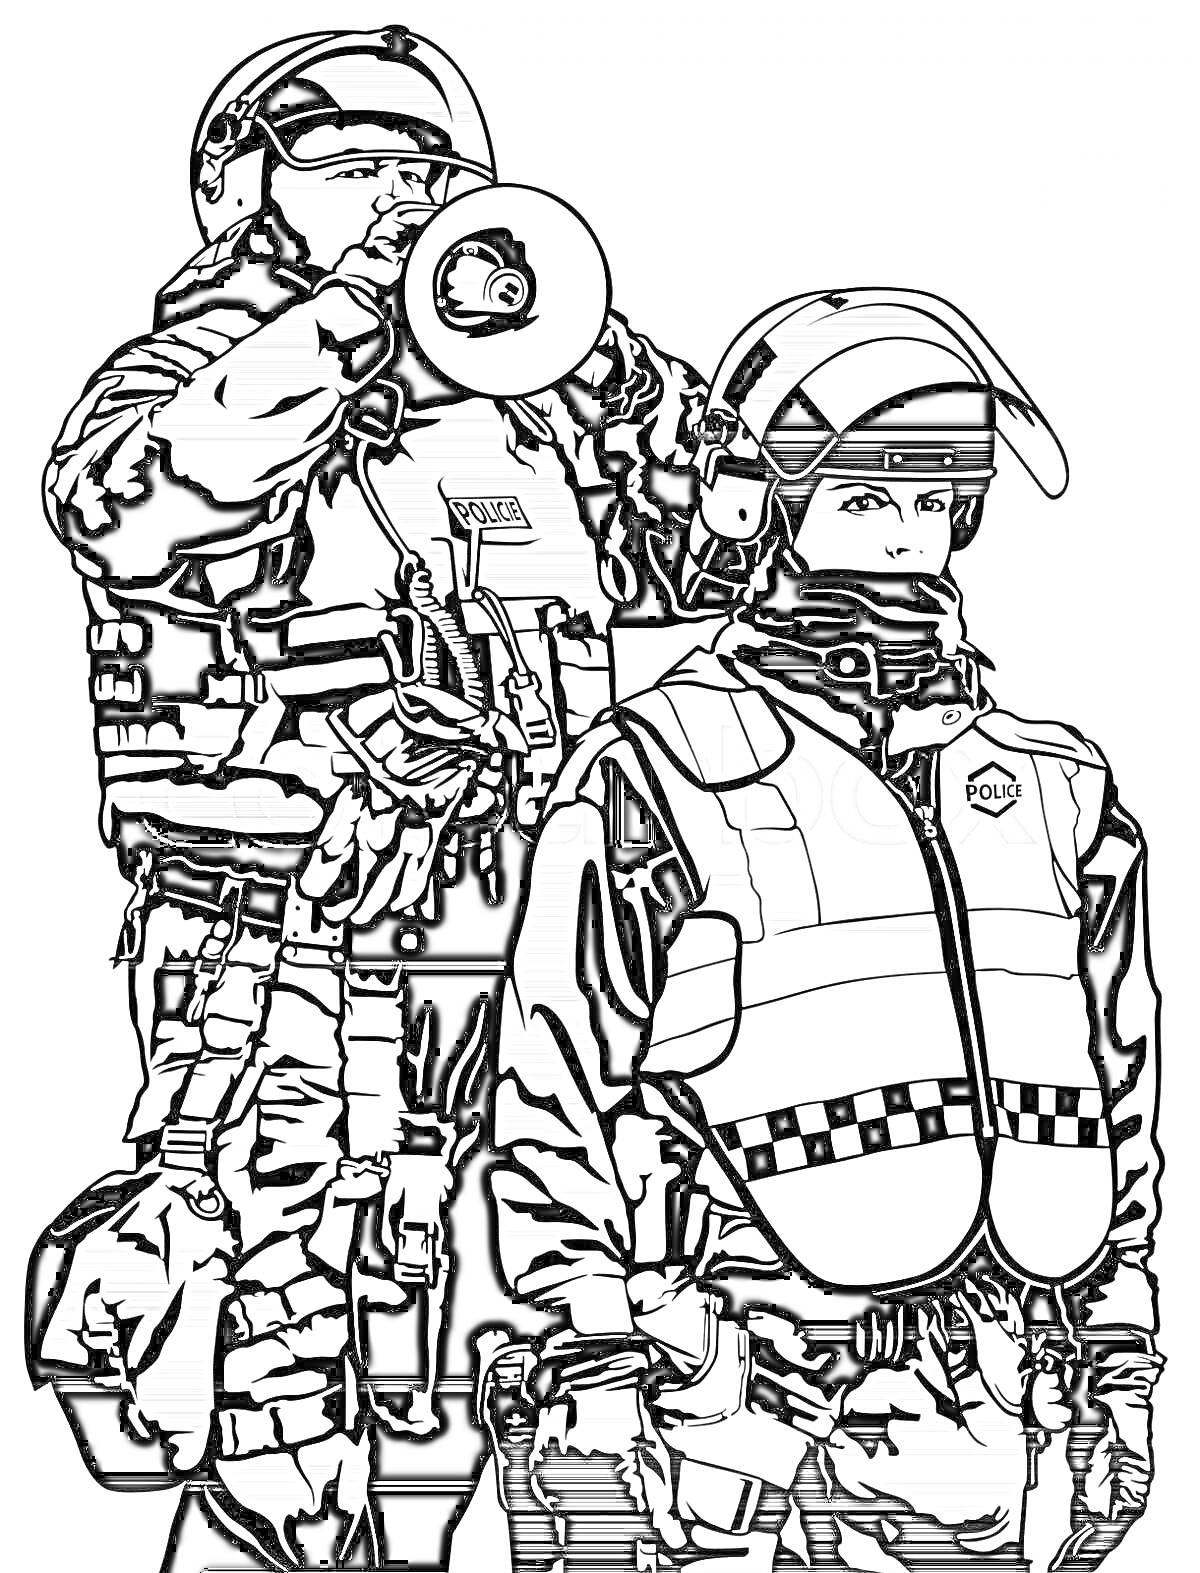 Раскраска ОМОН: офицер с мегафоном и офицер в защитном жилете и каске